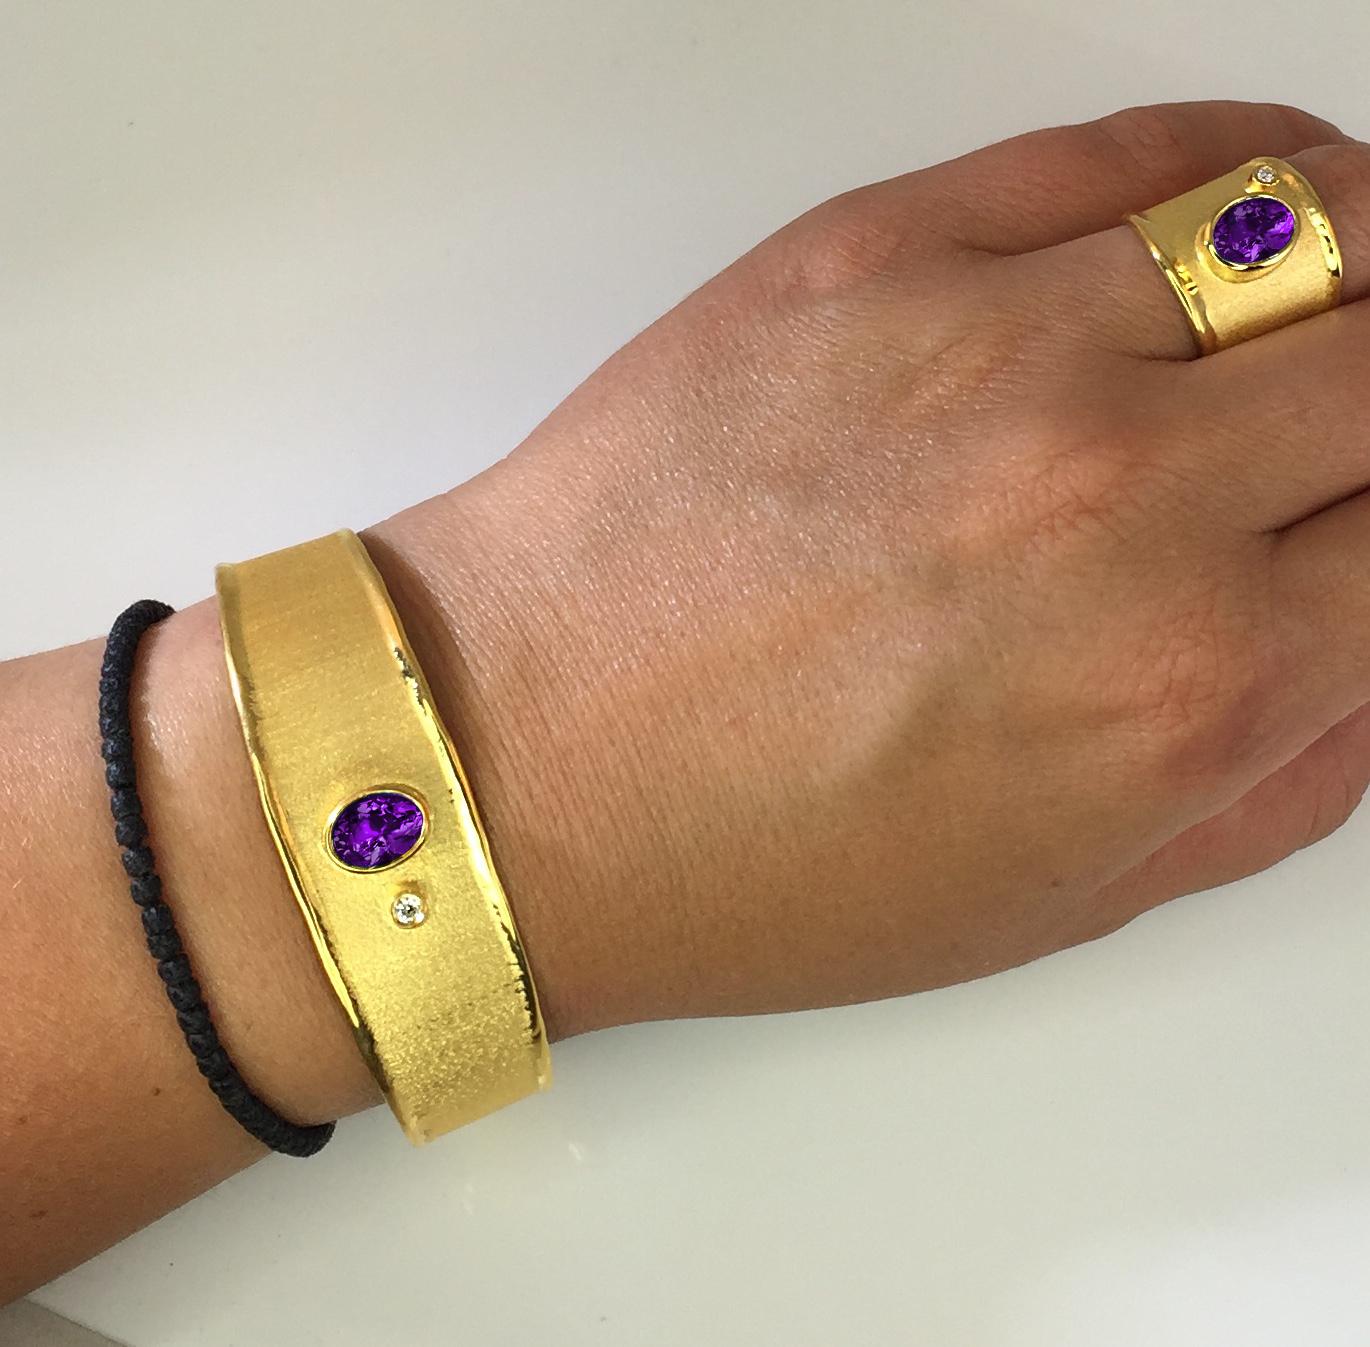 Le bracelet et la bague en or massif 18 carats de Yianni Creations sont tous fabriqués à la main dans notre atelier en Grèce. Ce superbe bracelet et cette bague artisanale présentent respectivement une améthyste ovale de 1,75 carat et 1,25 carat,